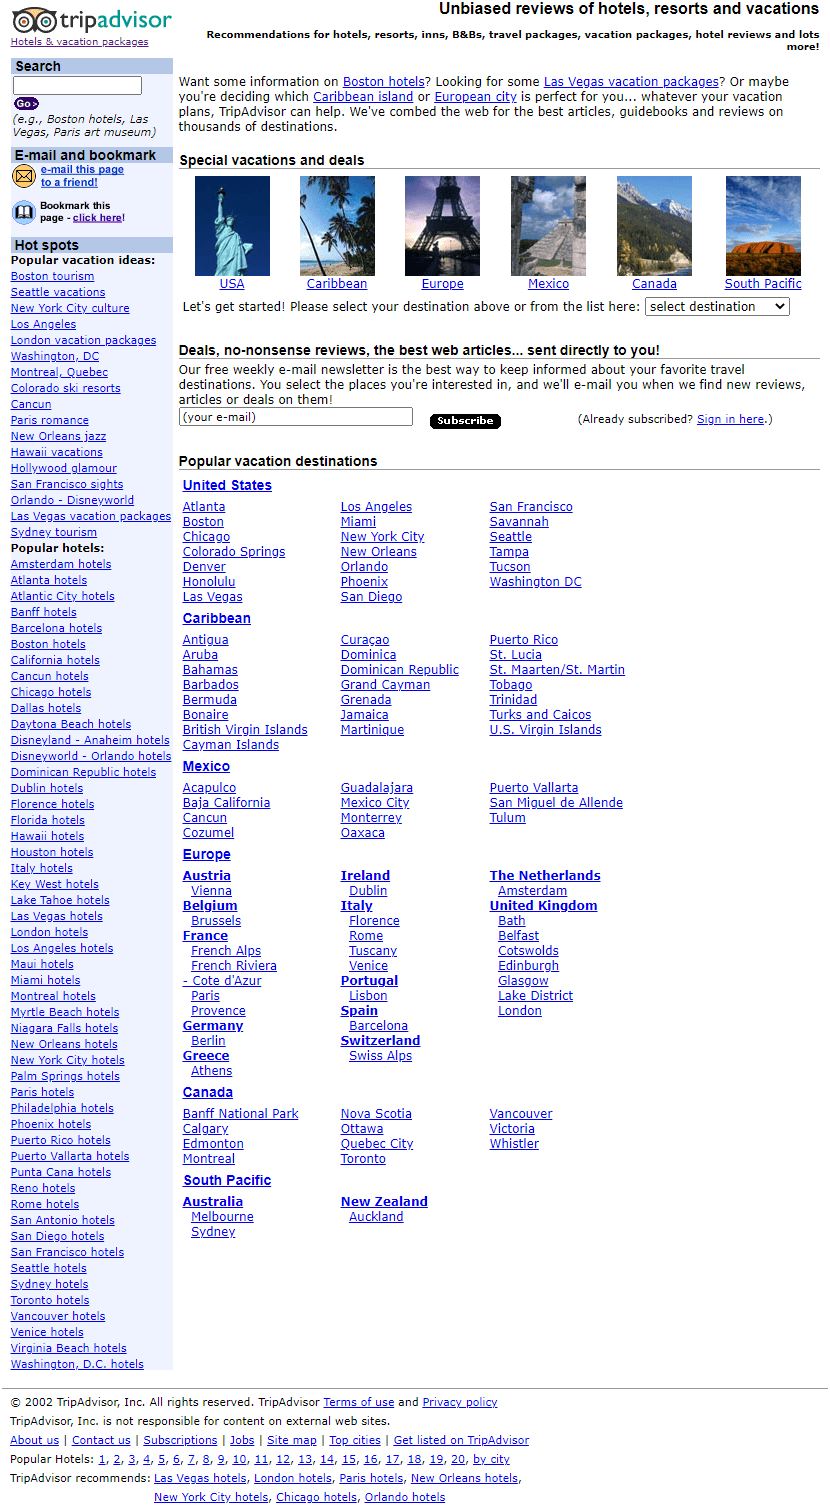 TripAdvisor website in 2002